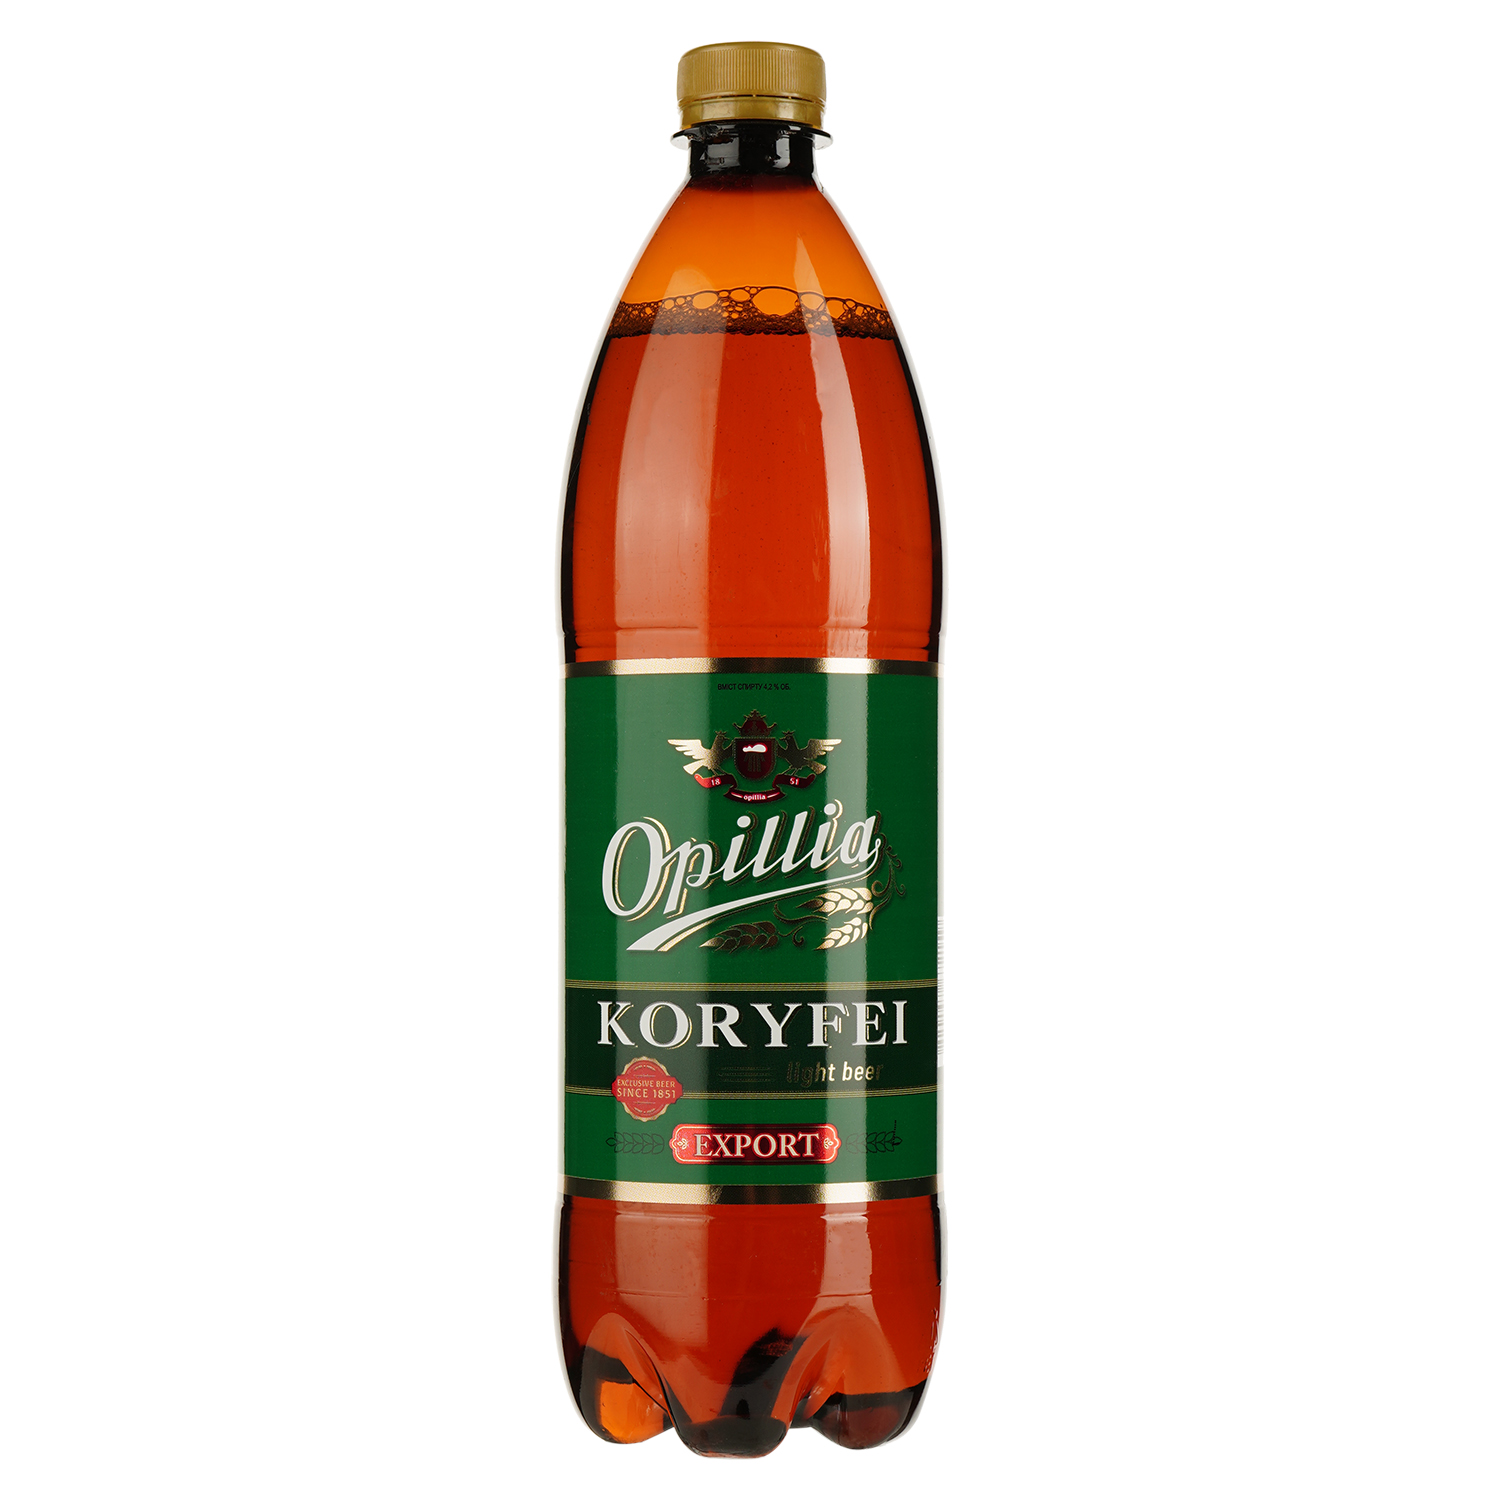 Пиво Опілля Export Koryfei, светлое, 4,2%, 1 л - фото 1